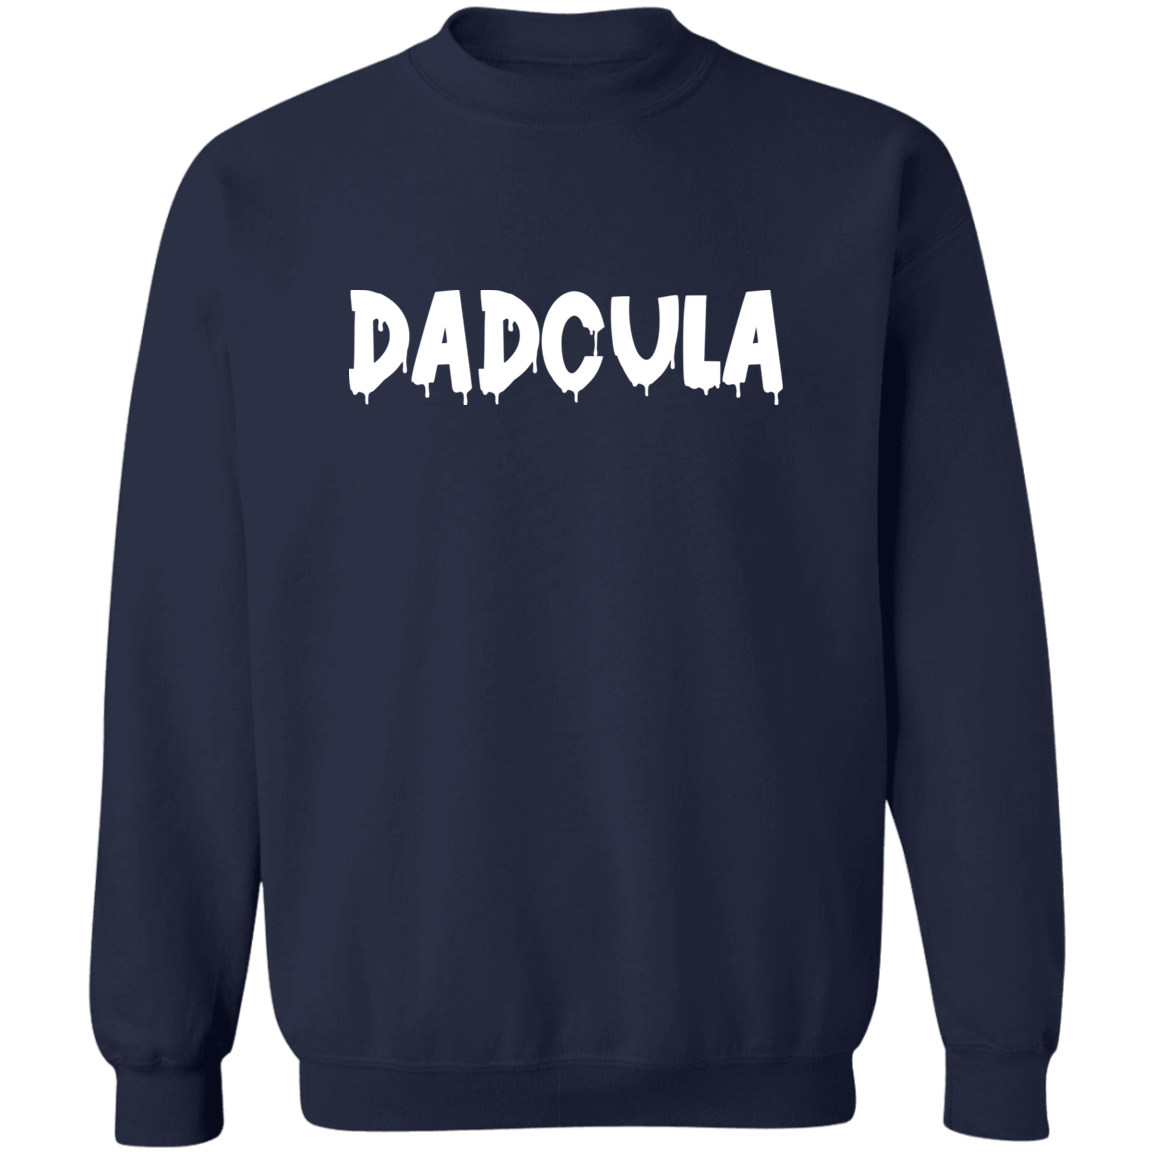 Dadcula Men's Pullover Crewneck Sweatshirt